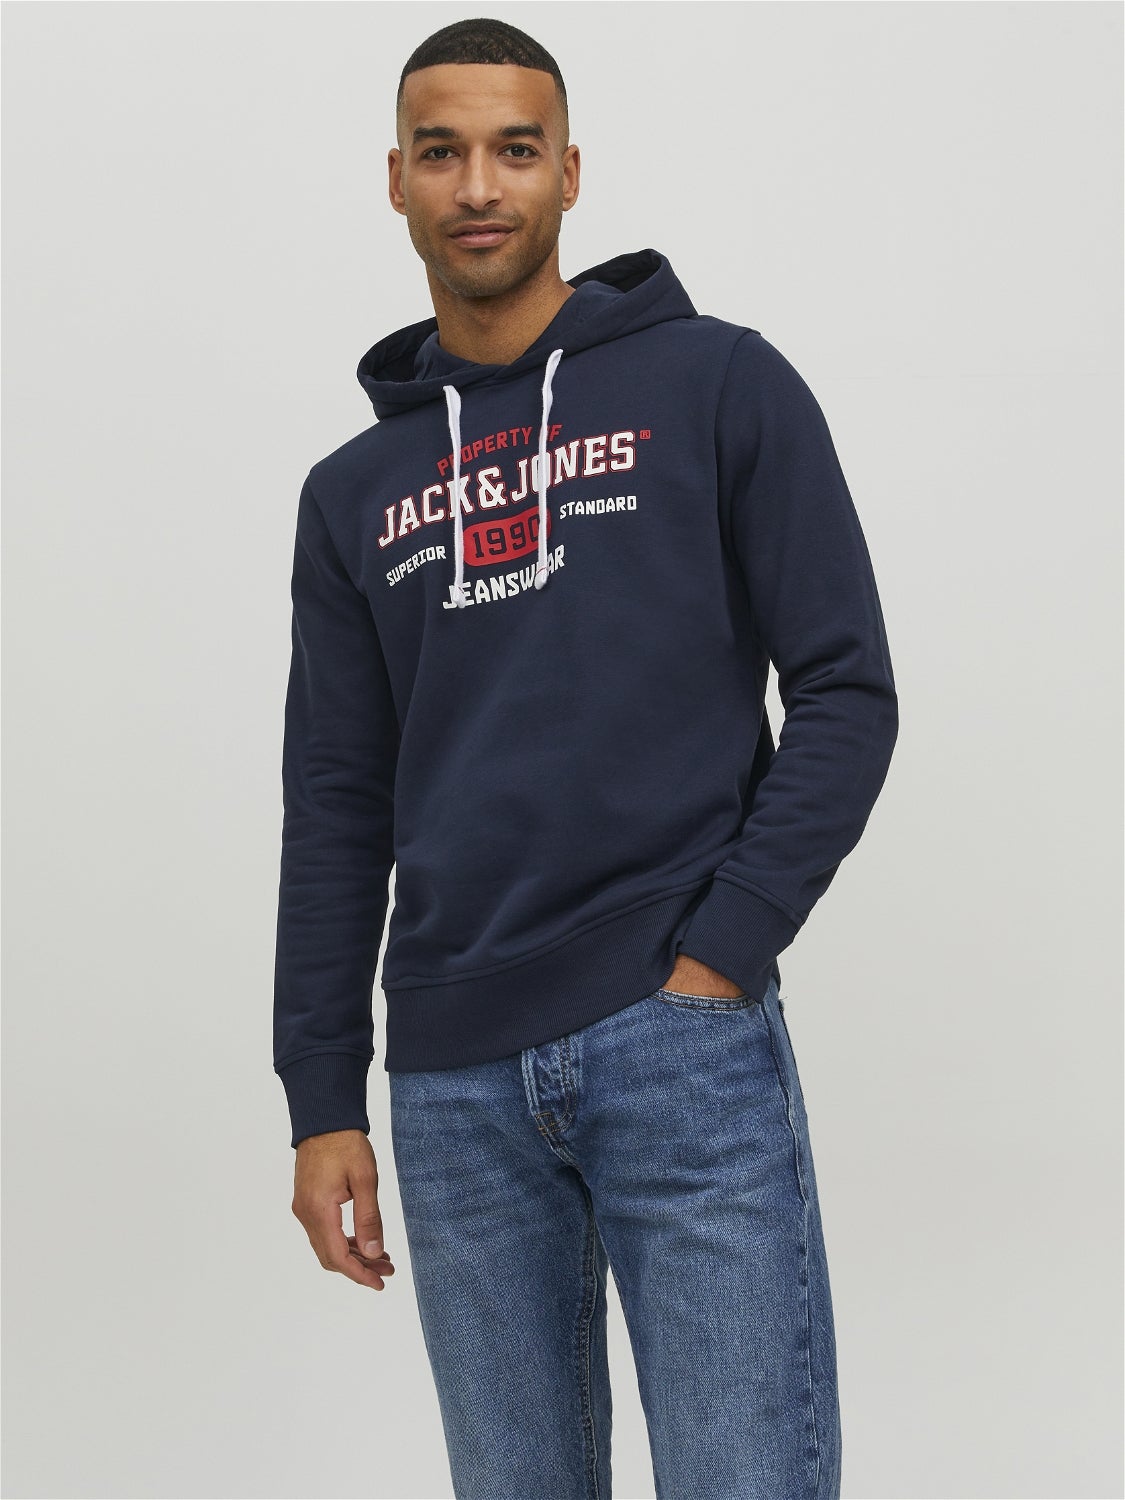 Dunkelblau L Rabatt 58 % HERREN Pullovers & Sweatshirts Hoodie Jack & Jones sweatshirt 